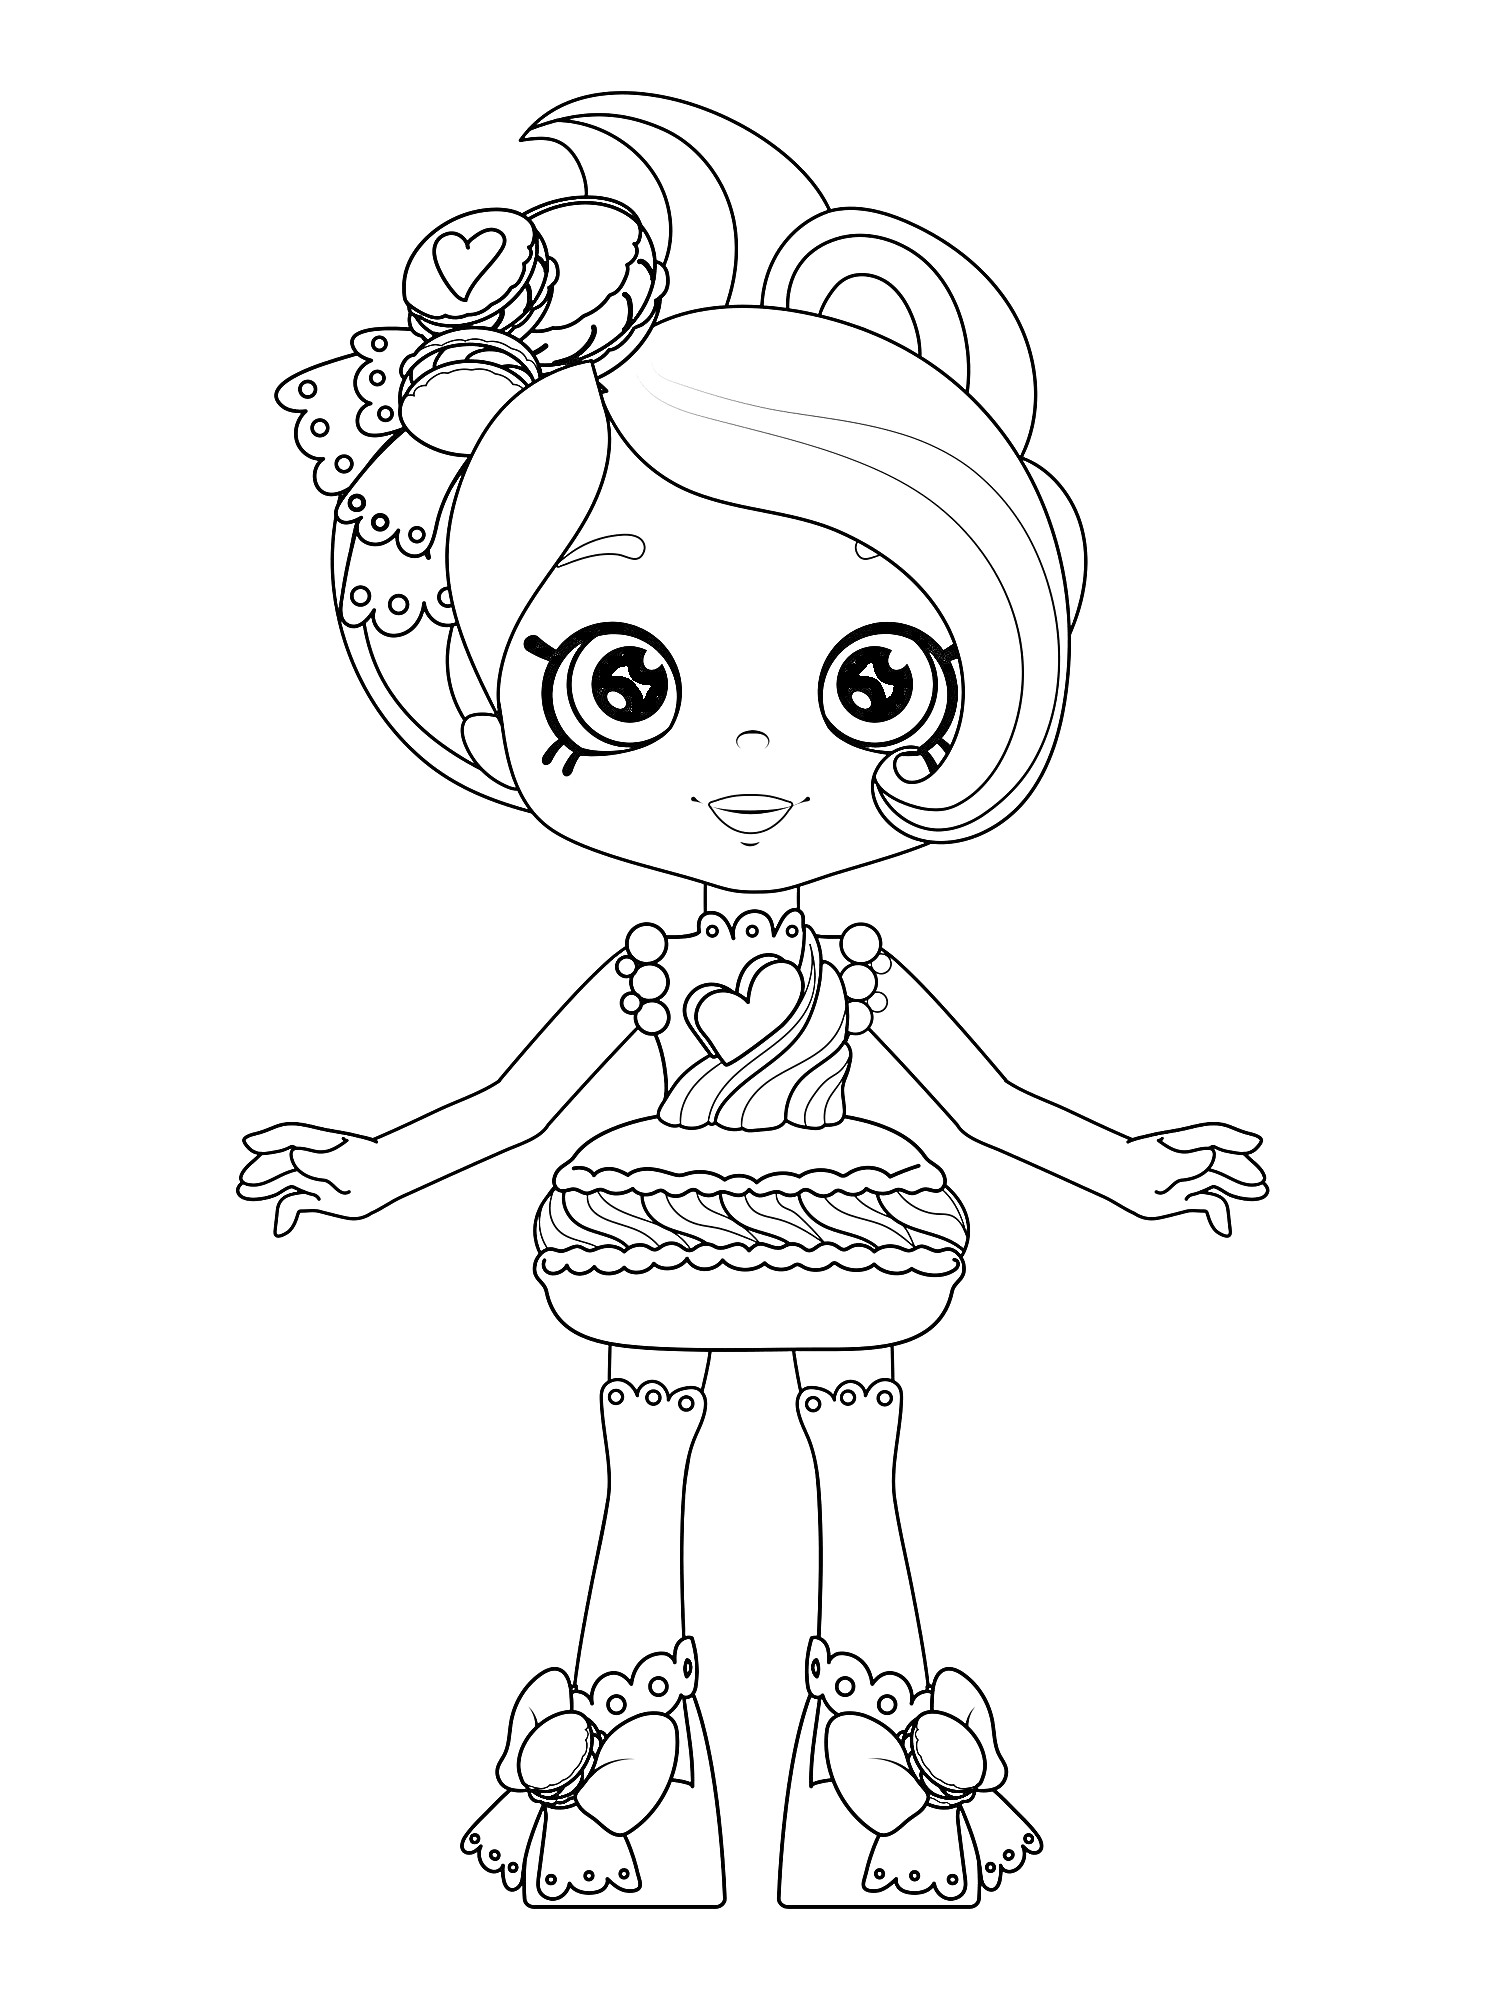 Раскраска Девочка Шопкинс с большой прической, сердечком на банте, длинным платьем с узорами и большими ботинками с бантами